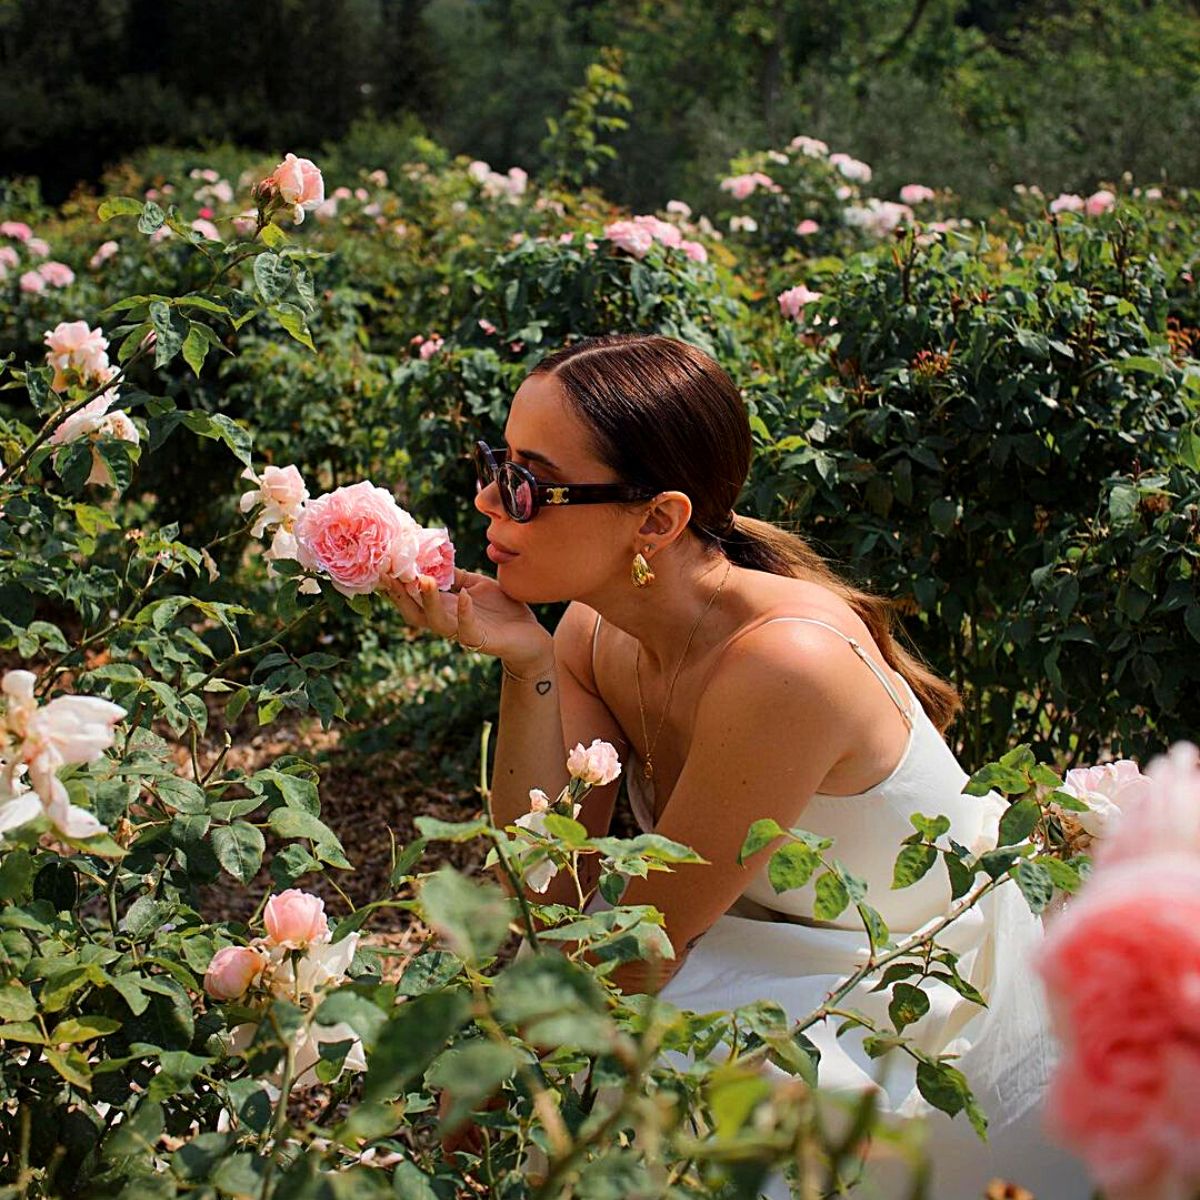 Iconic Rose Centifolia essential in Lancôme’s perfumery